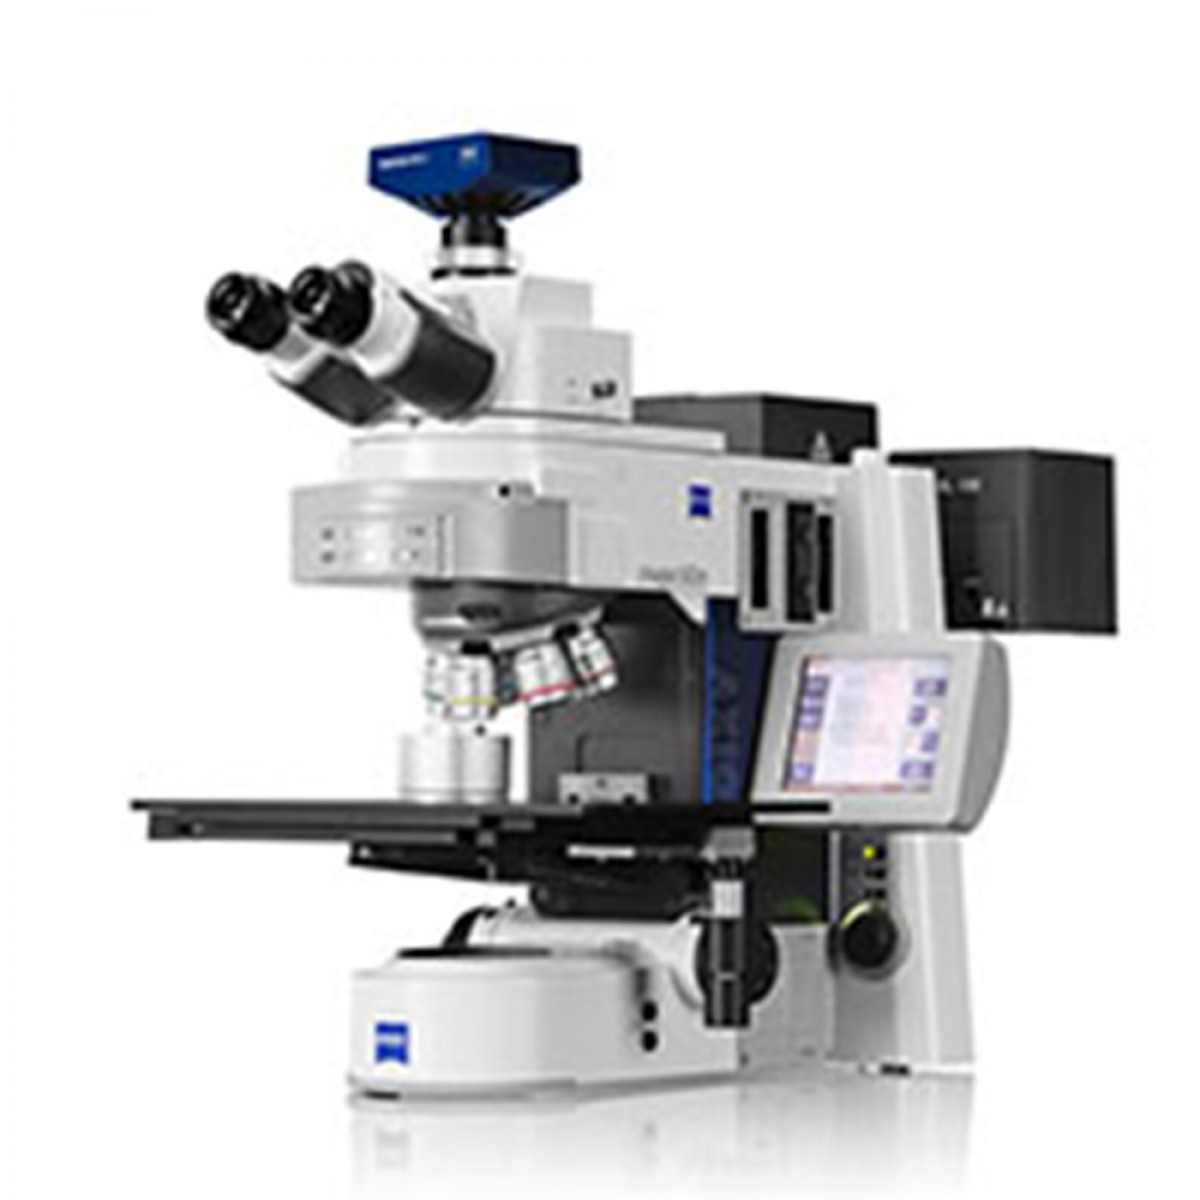 乐克严选 LEKOC 蔡司Axio Imager 2研究级生物显微镜用于材料研究